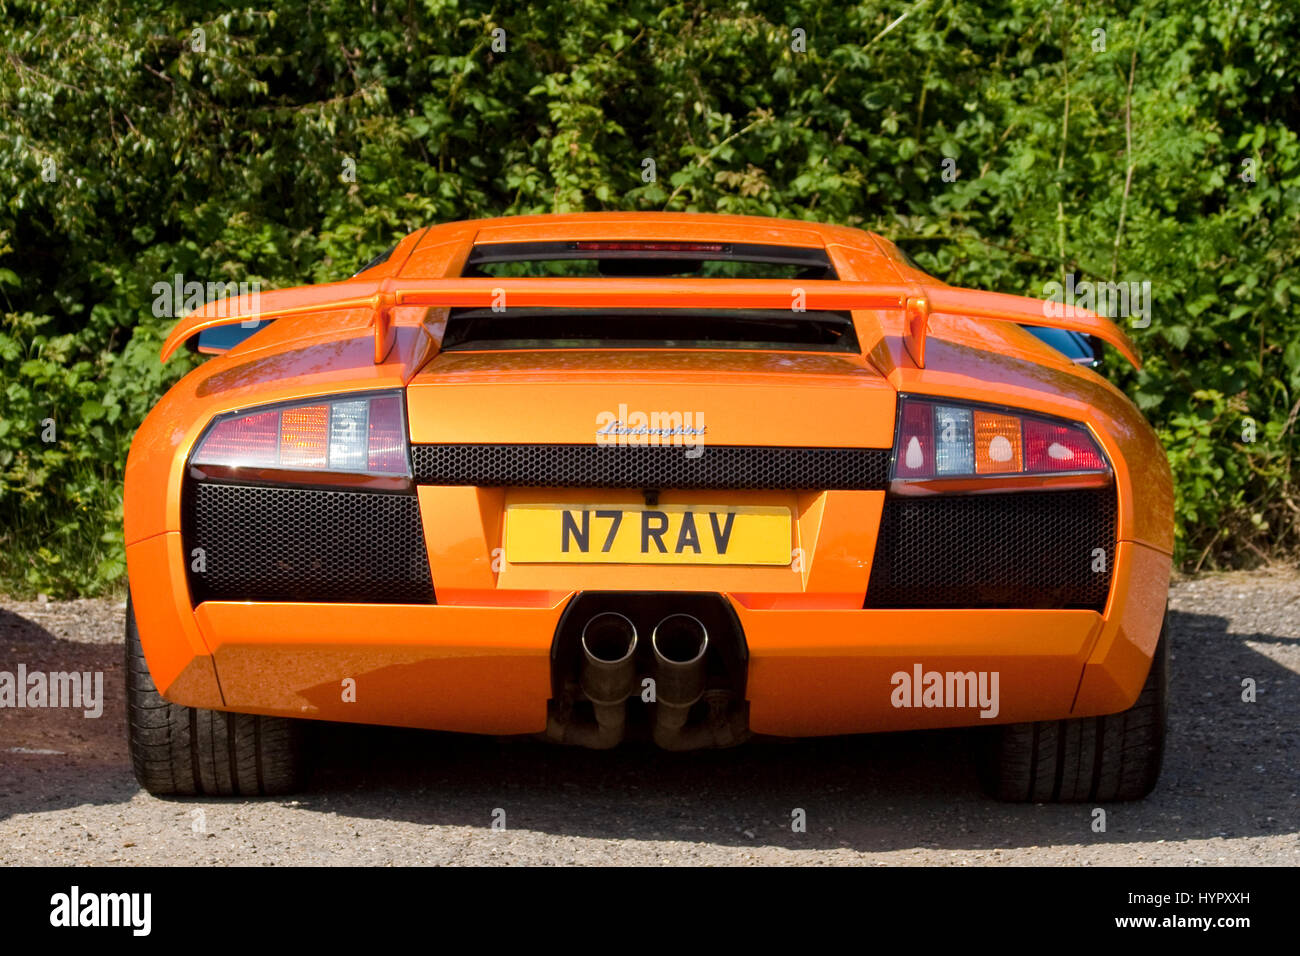 Orange Lamborghini vista posteriore bassa ampia elegante del lusso italiano sport auto parcheggiate. Doppio scarico a livello di ruote e pneumatici posteriori aerofoil metà v potenza di propulsori. Foto Stock